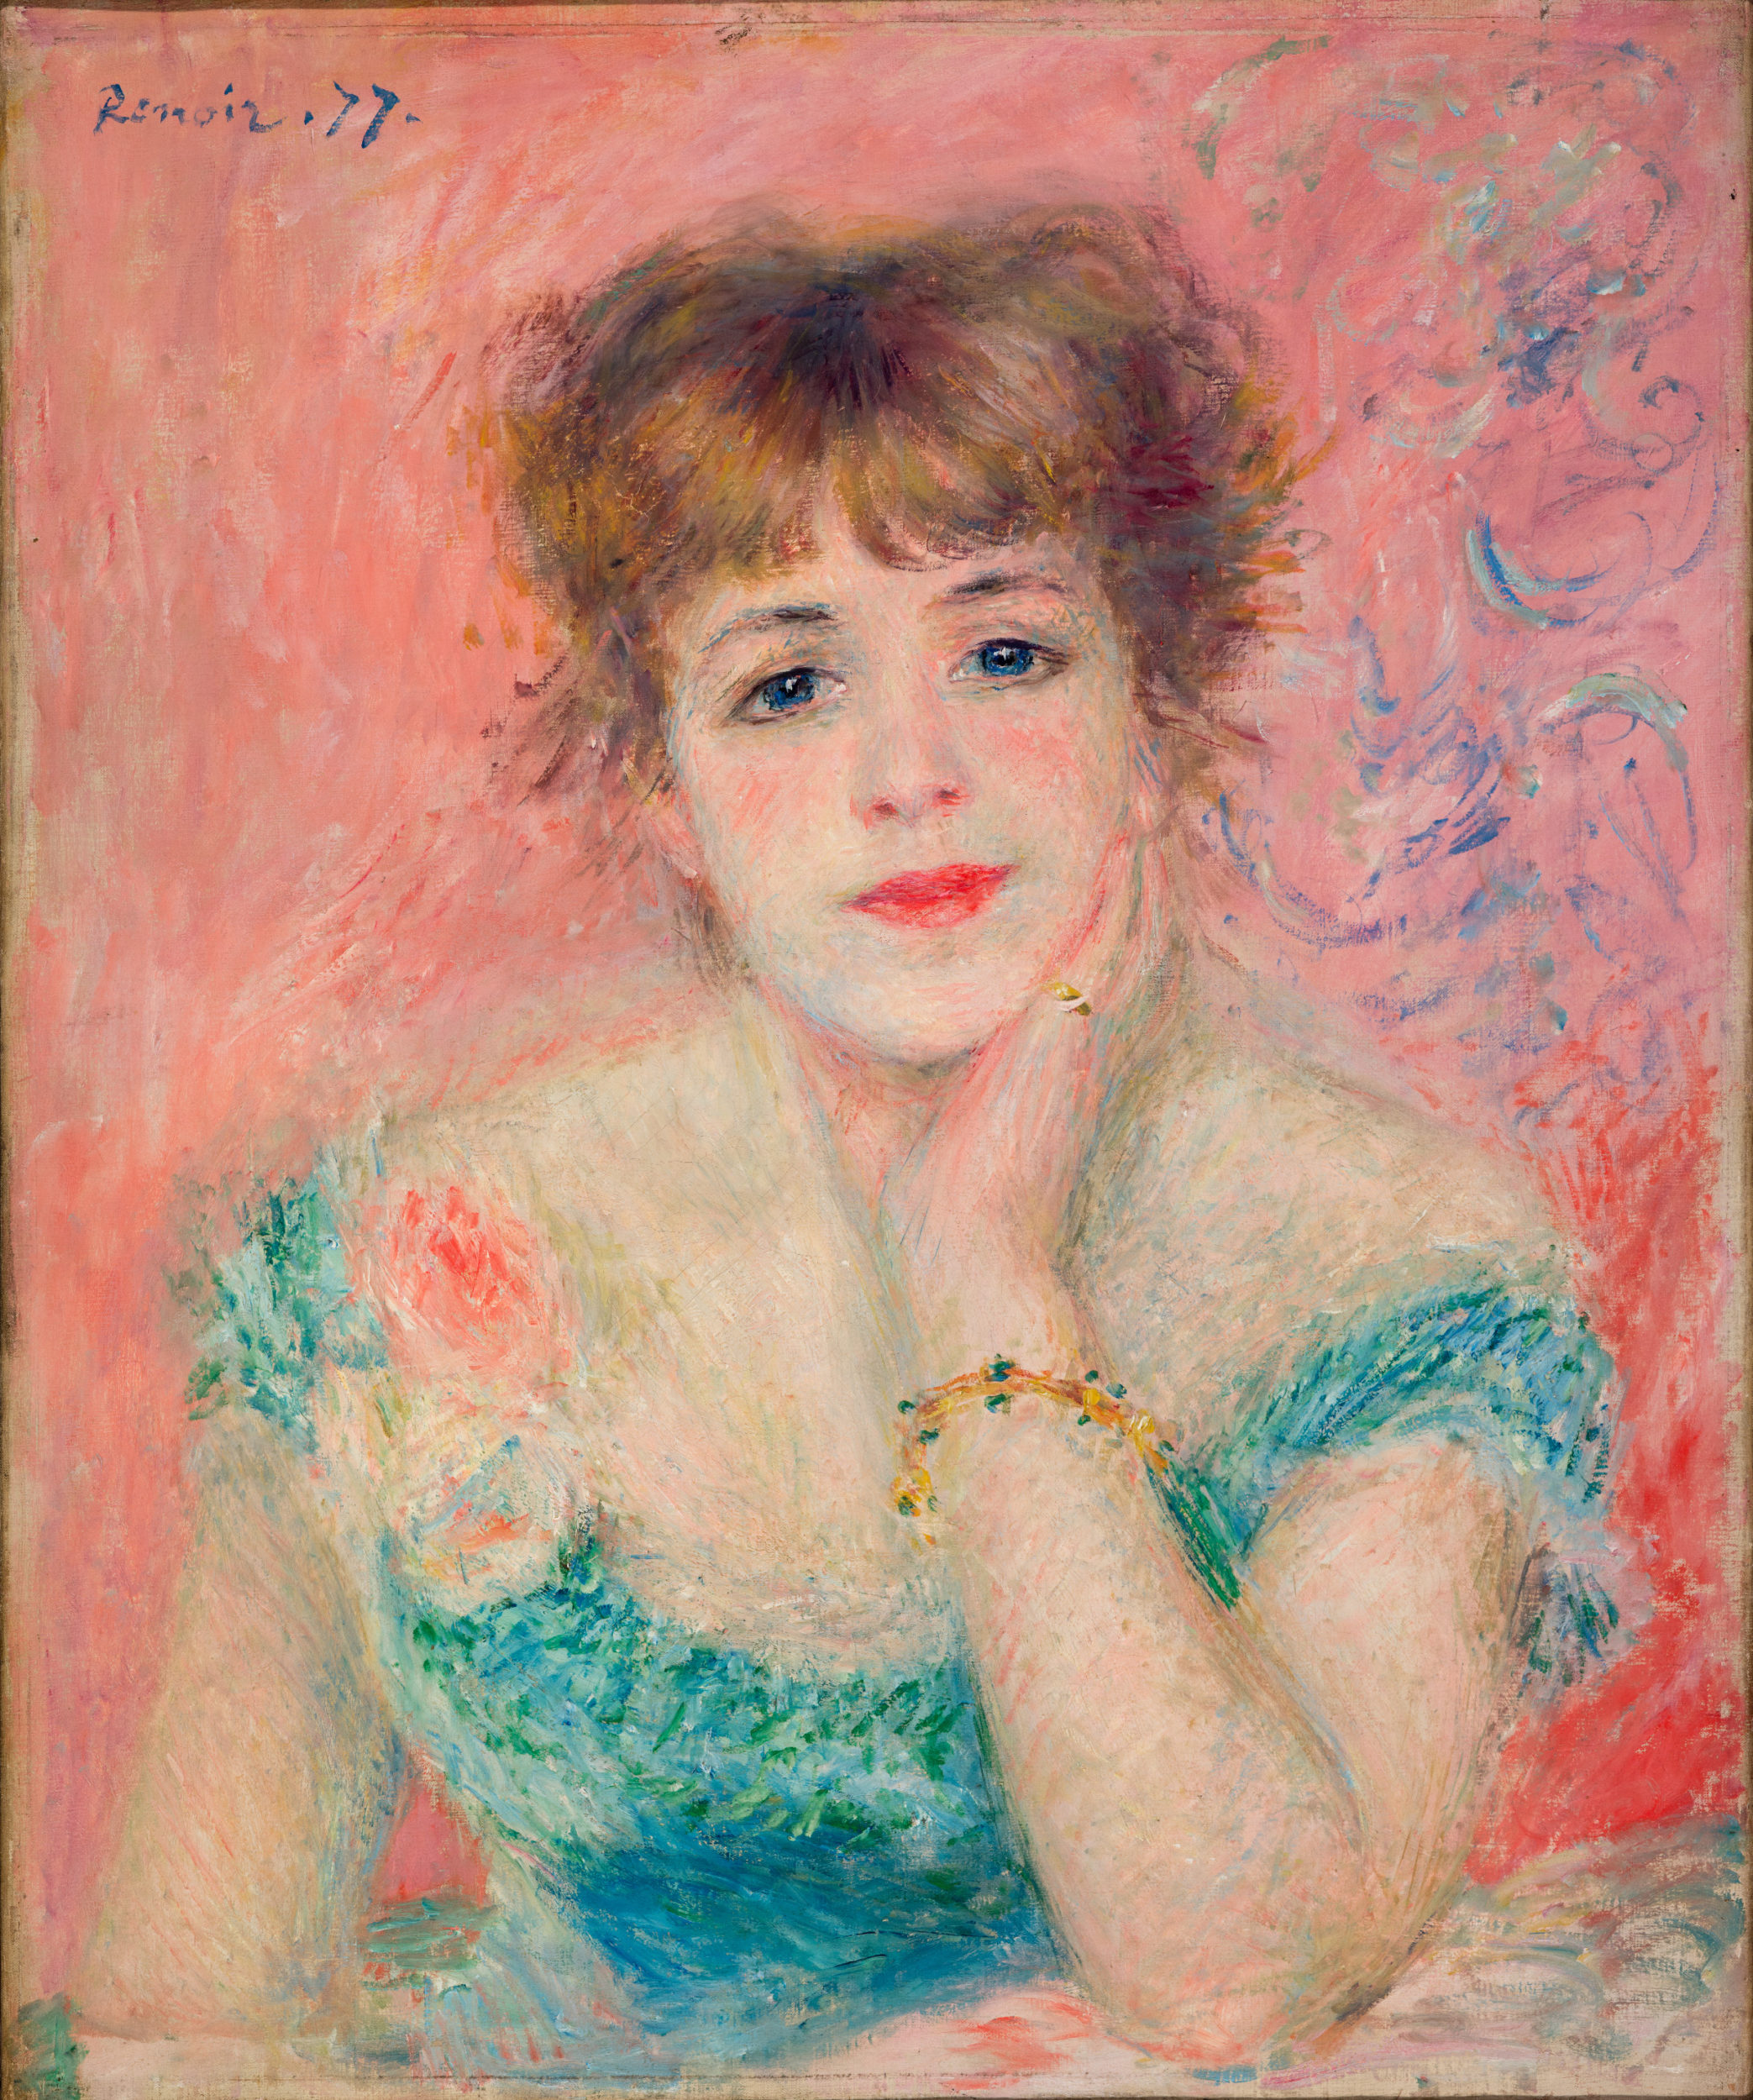 Auguste Renoir, Portrait of the Actress Jeanne Samary, Paris, 1877